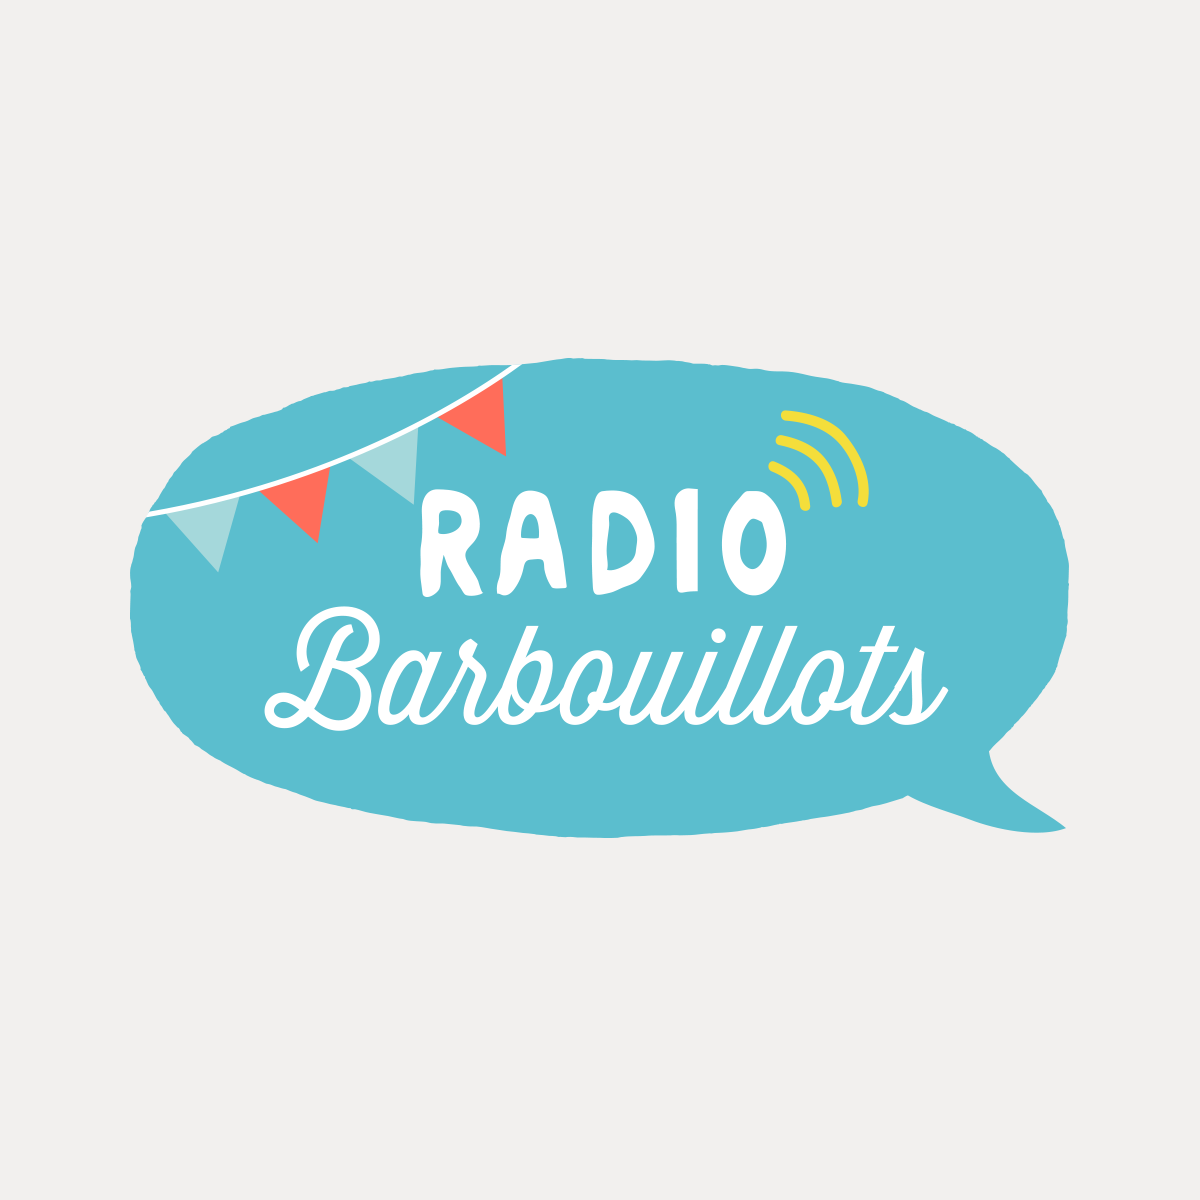 (c) Radiobarbouillots.com